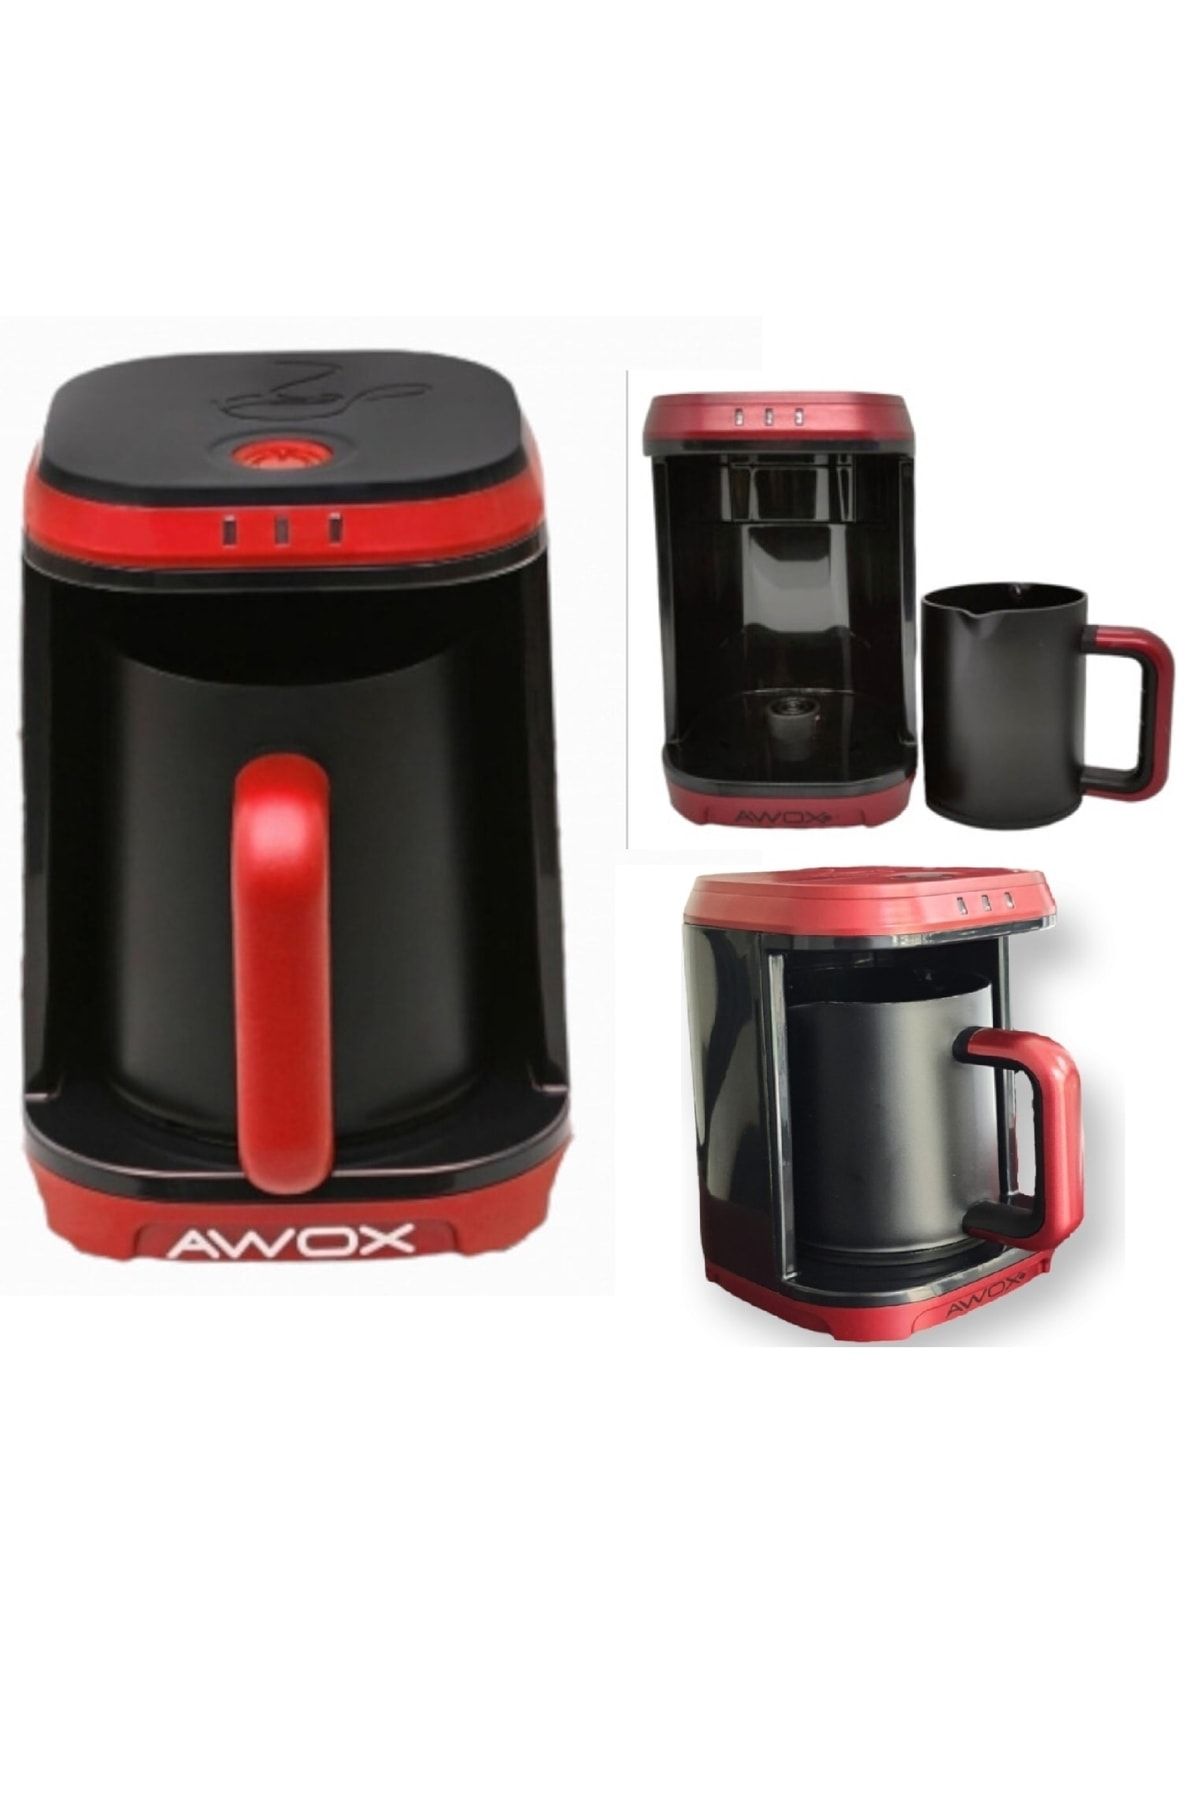 AWOX Kafija New Sesli Ve Işıklı Türk Kahve Makinesi 500w Susuz Çalışmama Emniyeti Otomatik Kapanma